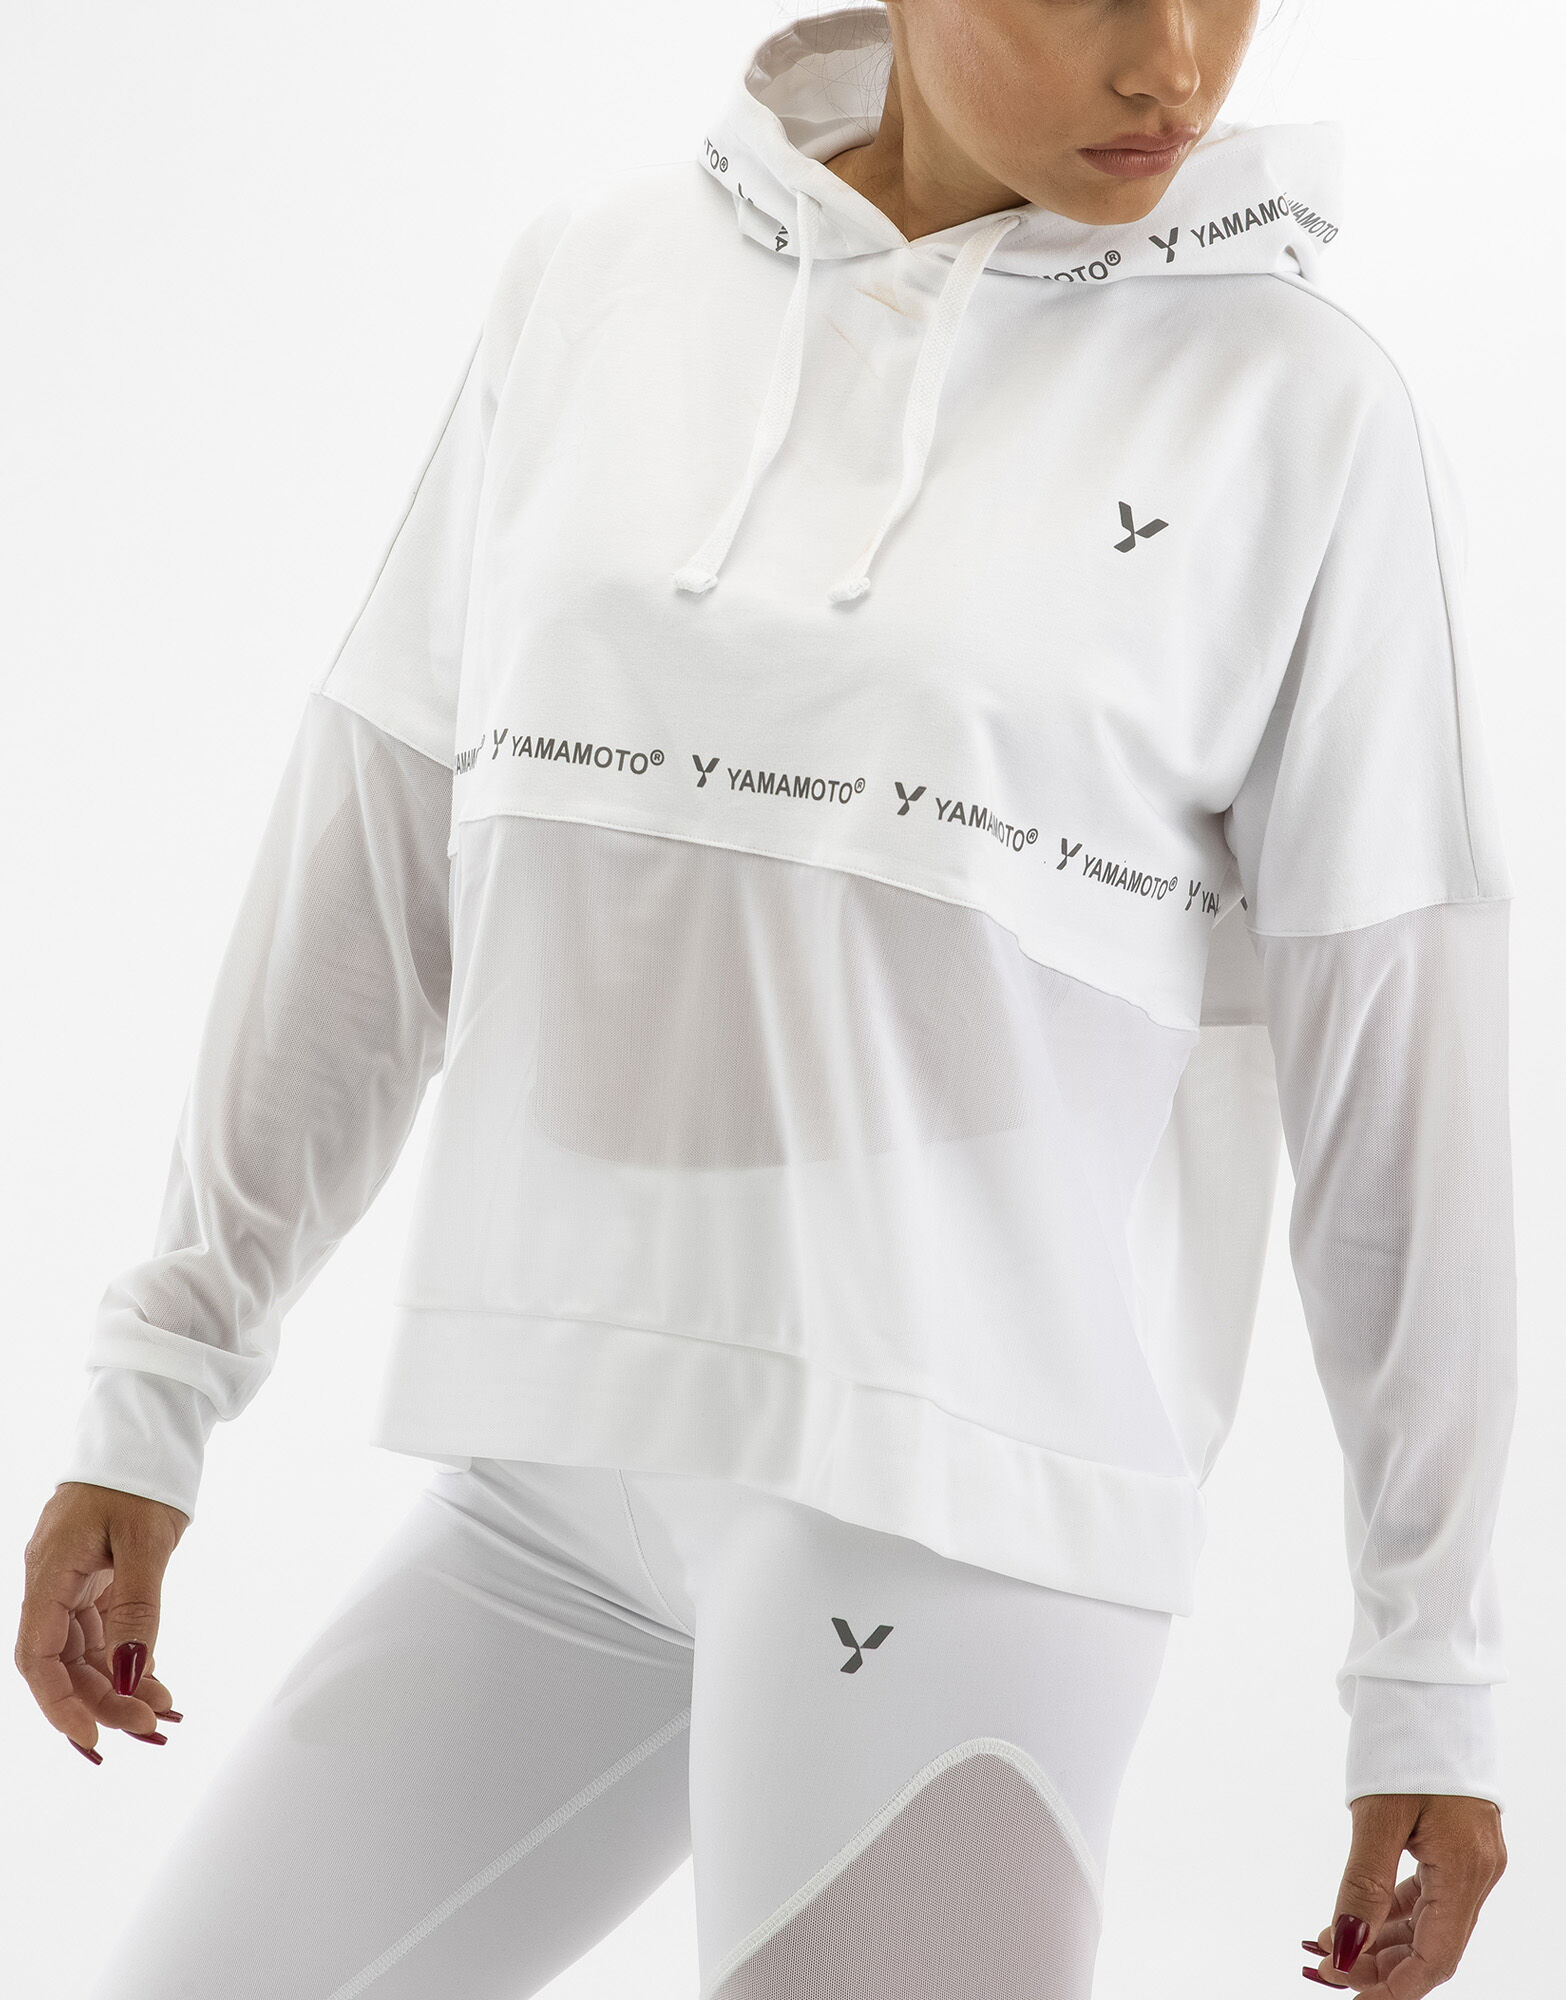 YAMAMOTO OUTFIT Lady Sweatshirt Colore: Bianco/bianco L